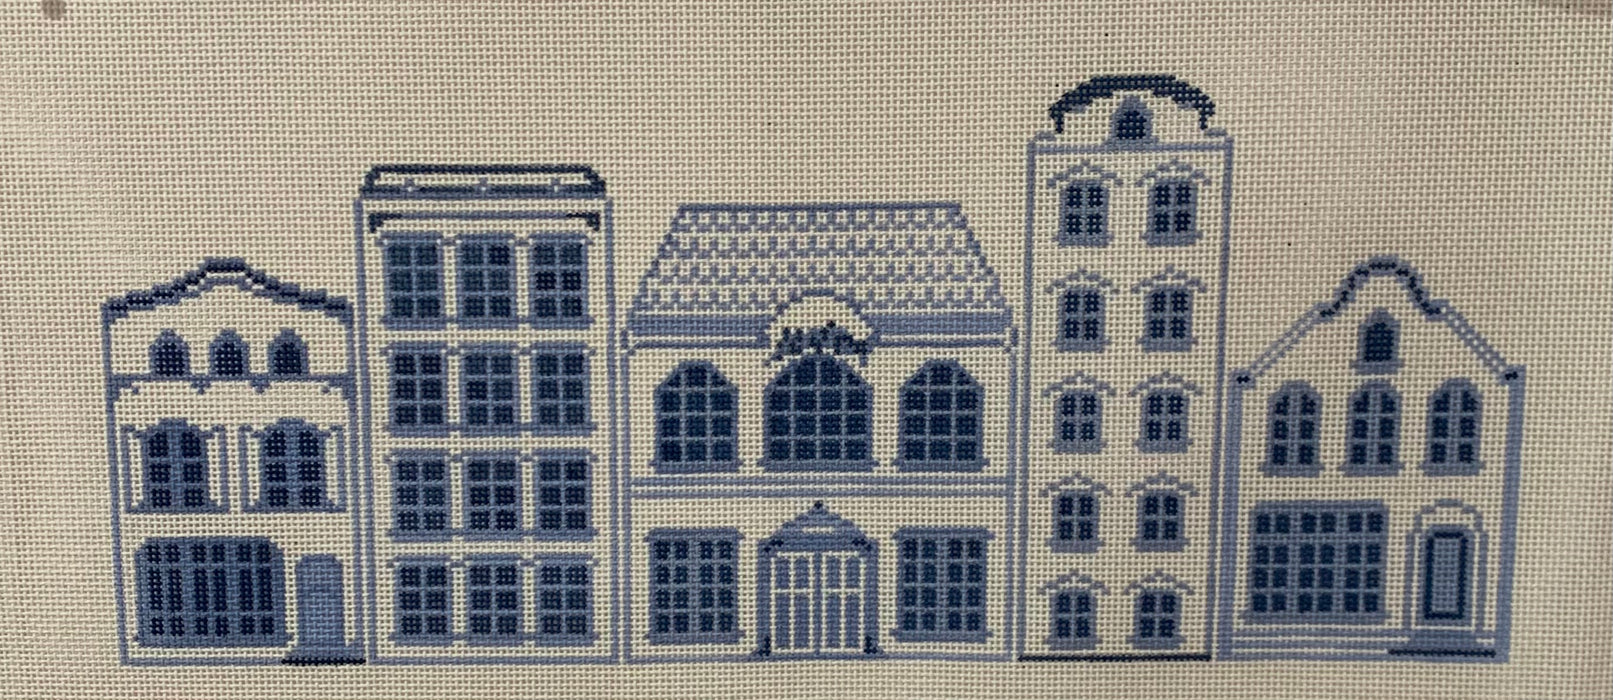 Delft Row Houses